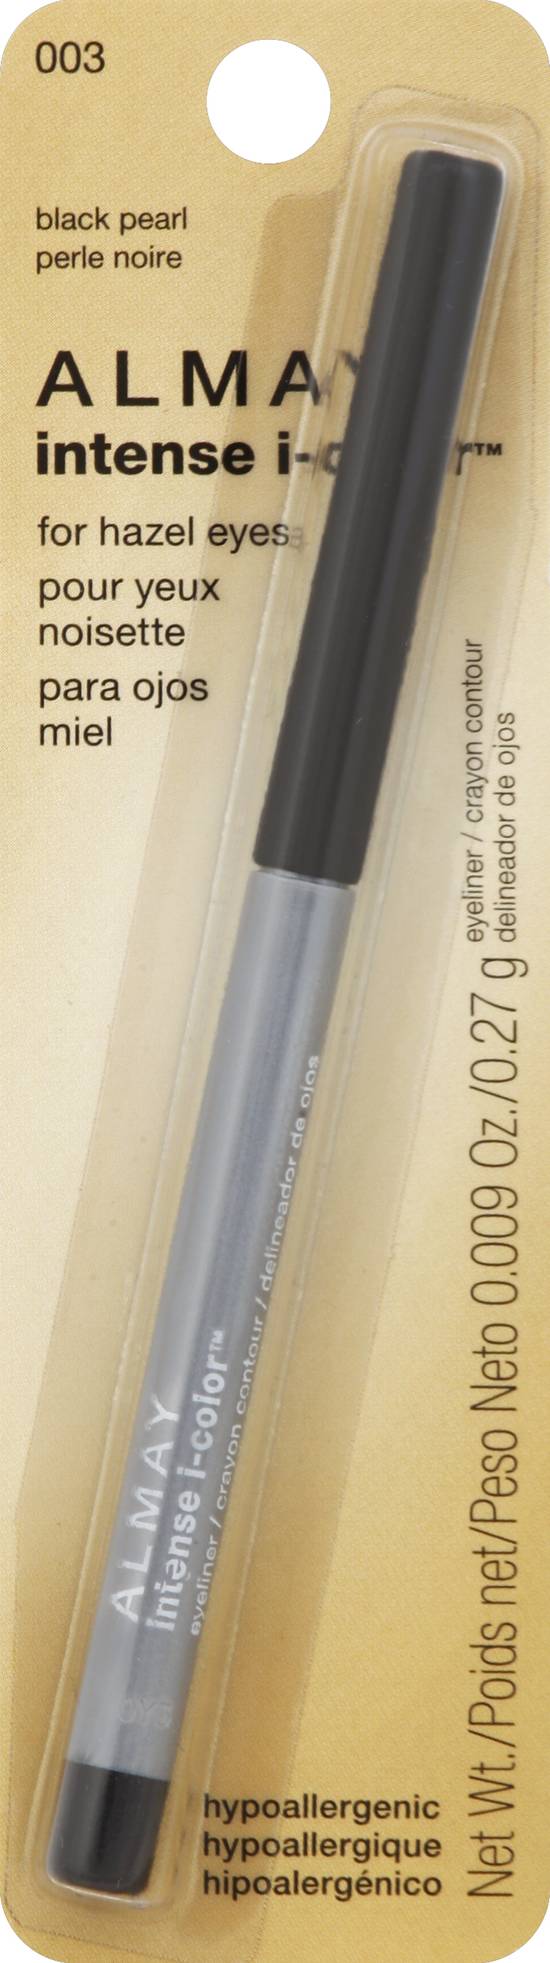 Almay 003 Black Pearl Eyeliner Pencil